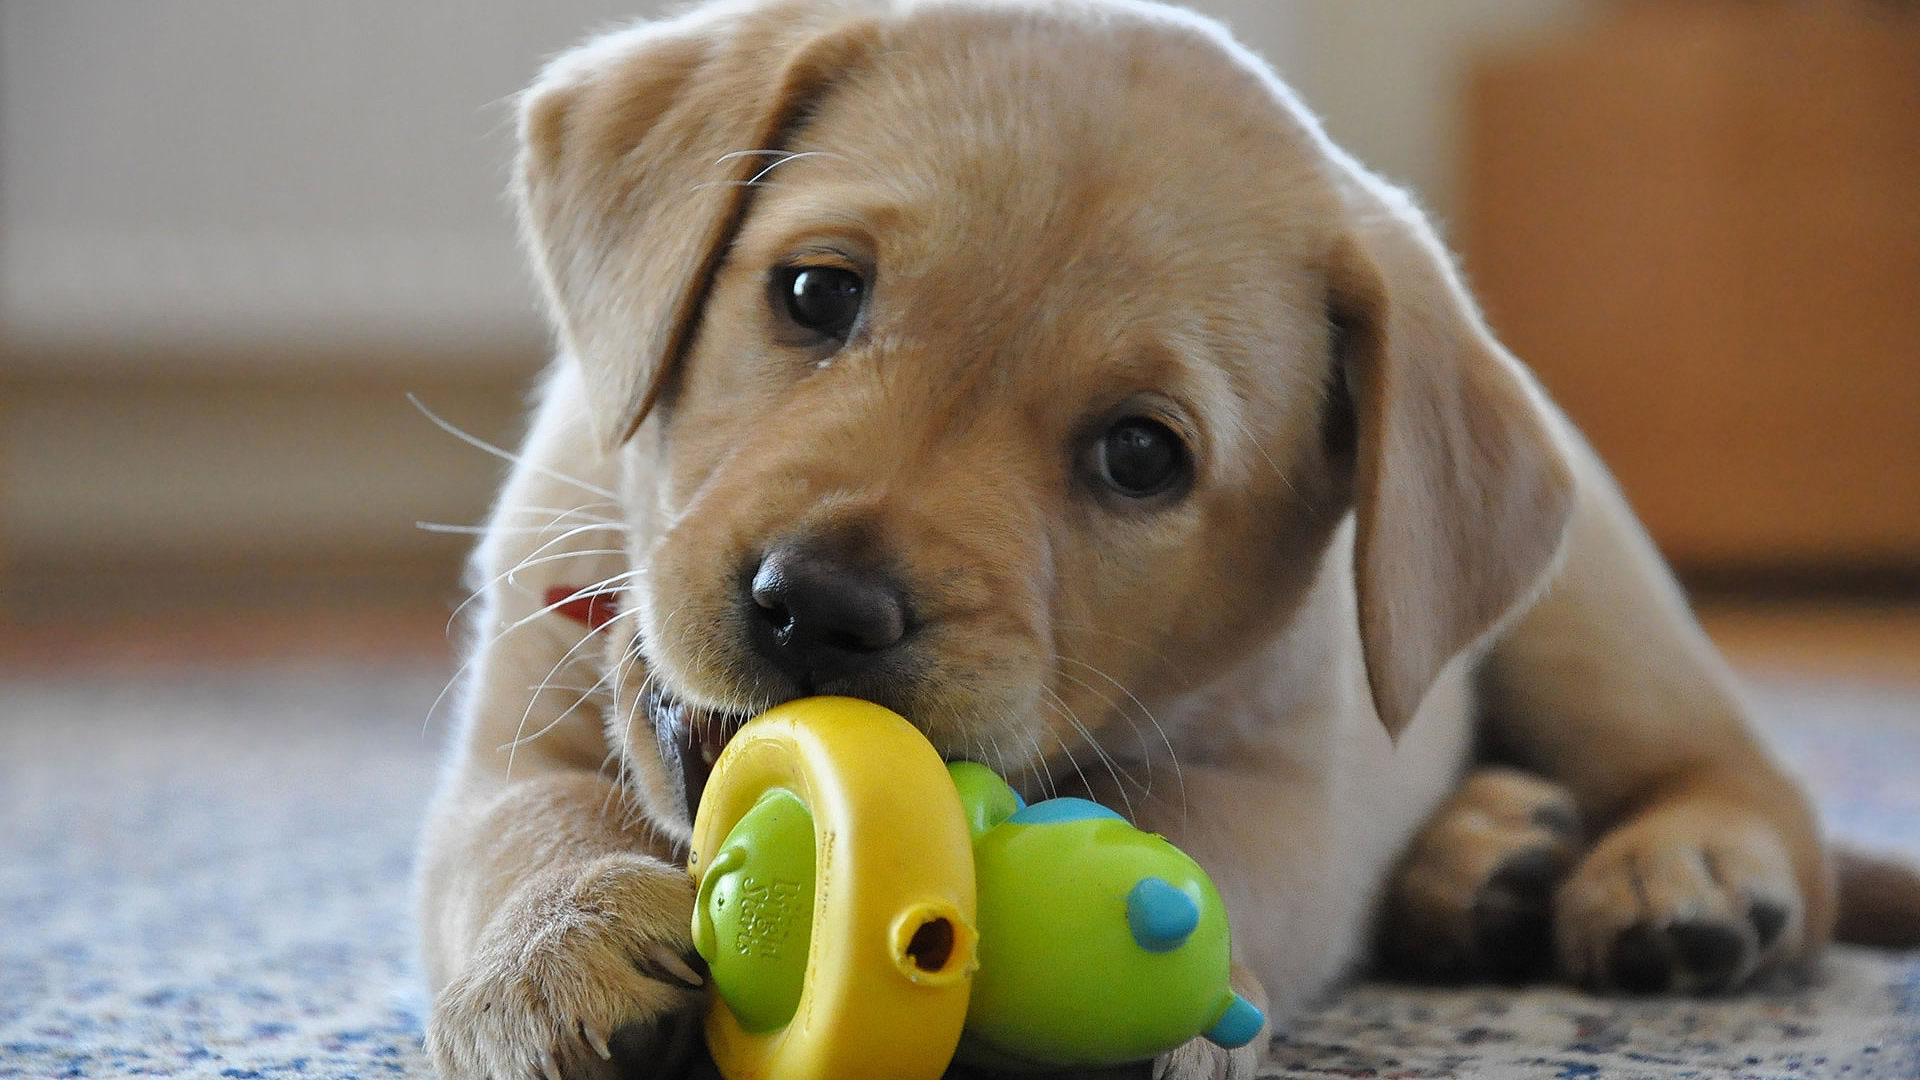 Labrador Retriever puppy playing - LabraDor Retriever Puppy Playing